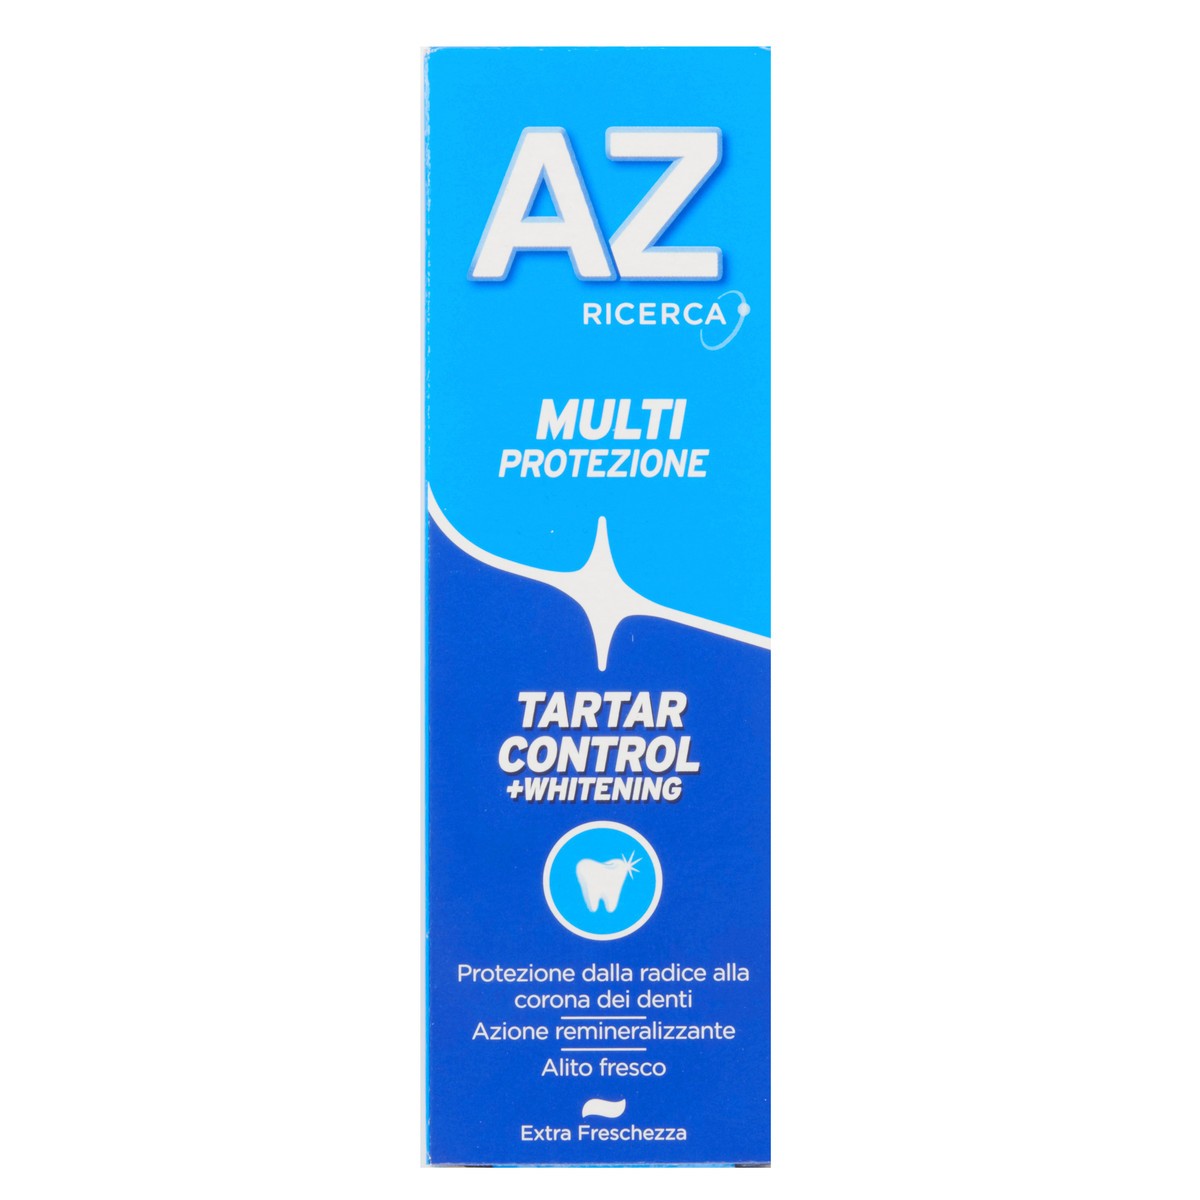 AZ Dentifricio Tartar Control + Whitening